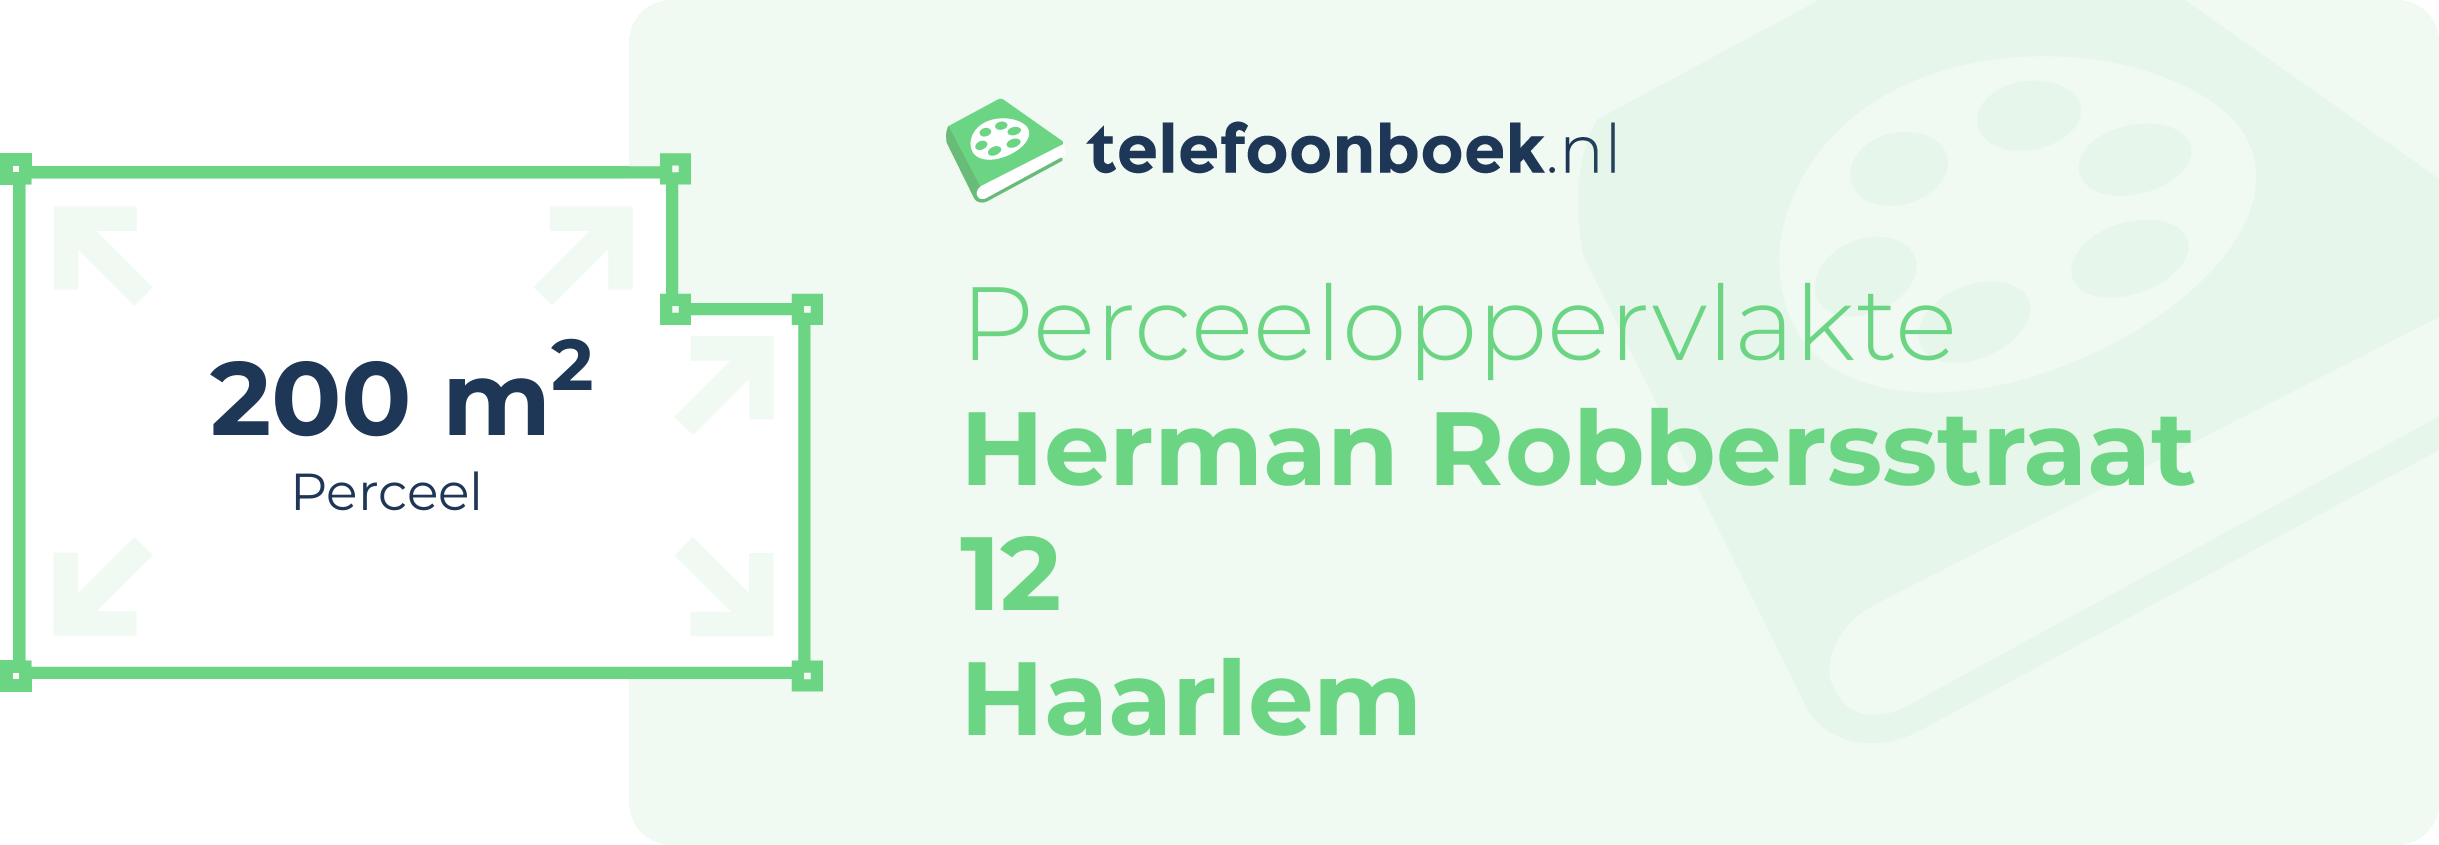 Perceeloppervlakte Herman Robbersstraat 12 Haarlem